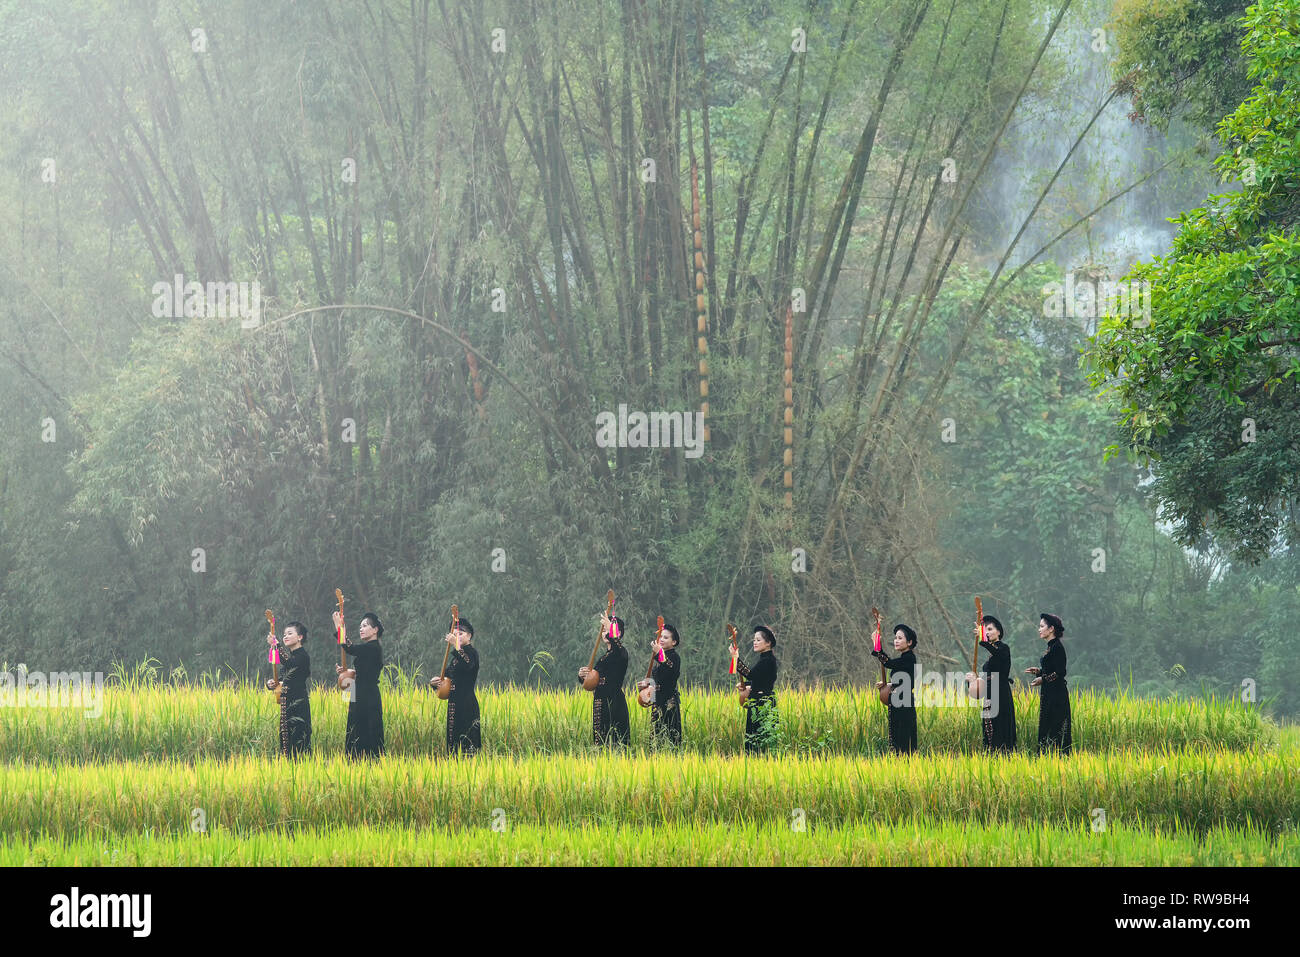 Ethnische Minderheit Mädchen Tay hält Musikinstrumente in Reisfeldern. Tay Menschen leben für eine lange Zeit in der trung Khanh, Cao Bang, Vietnam Stockfoto